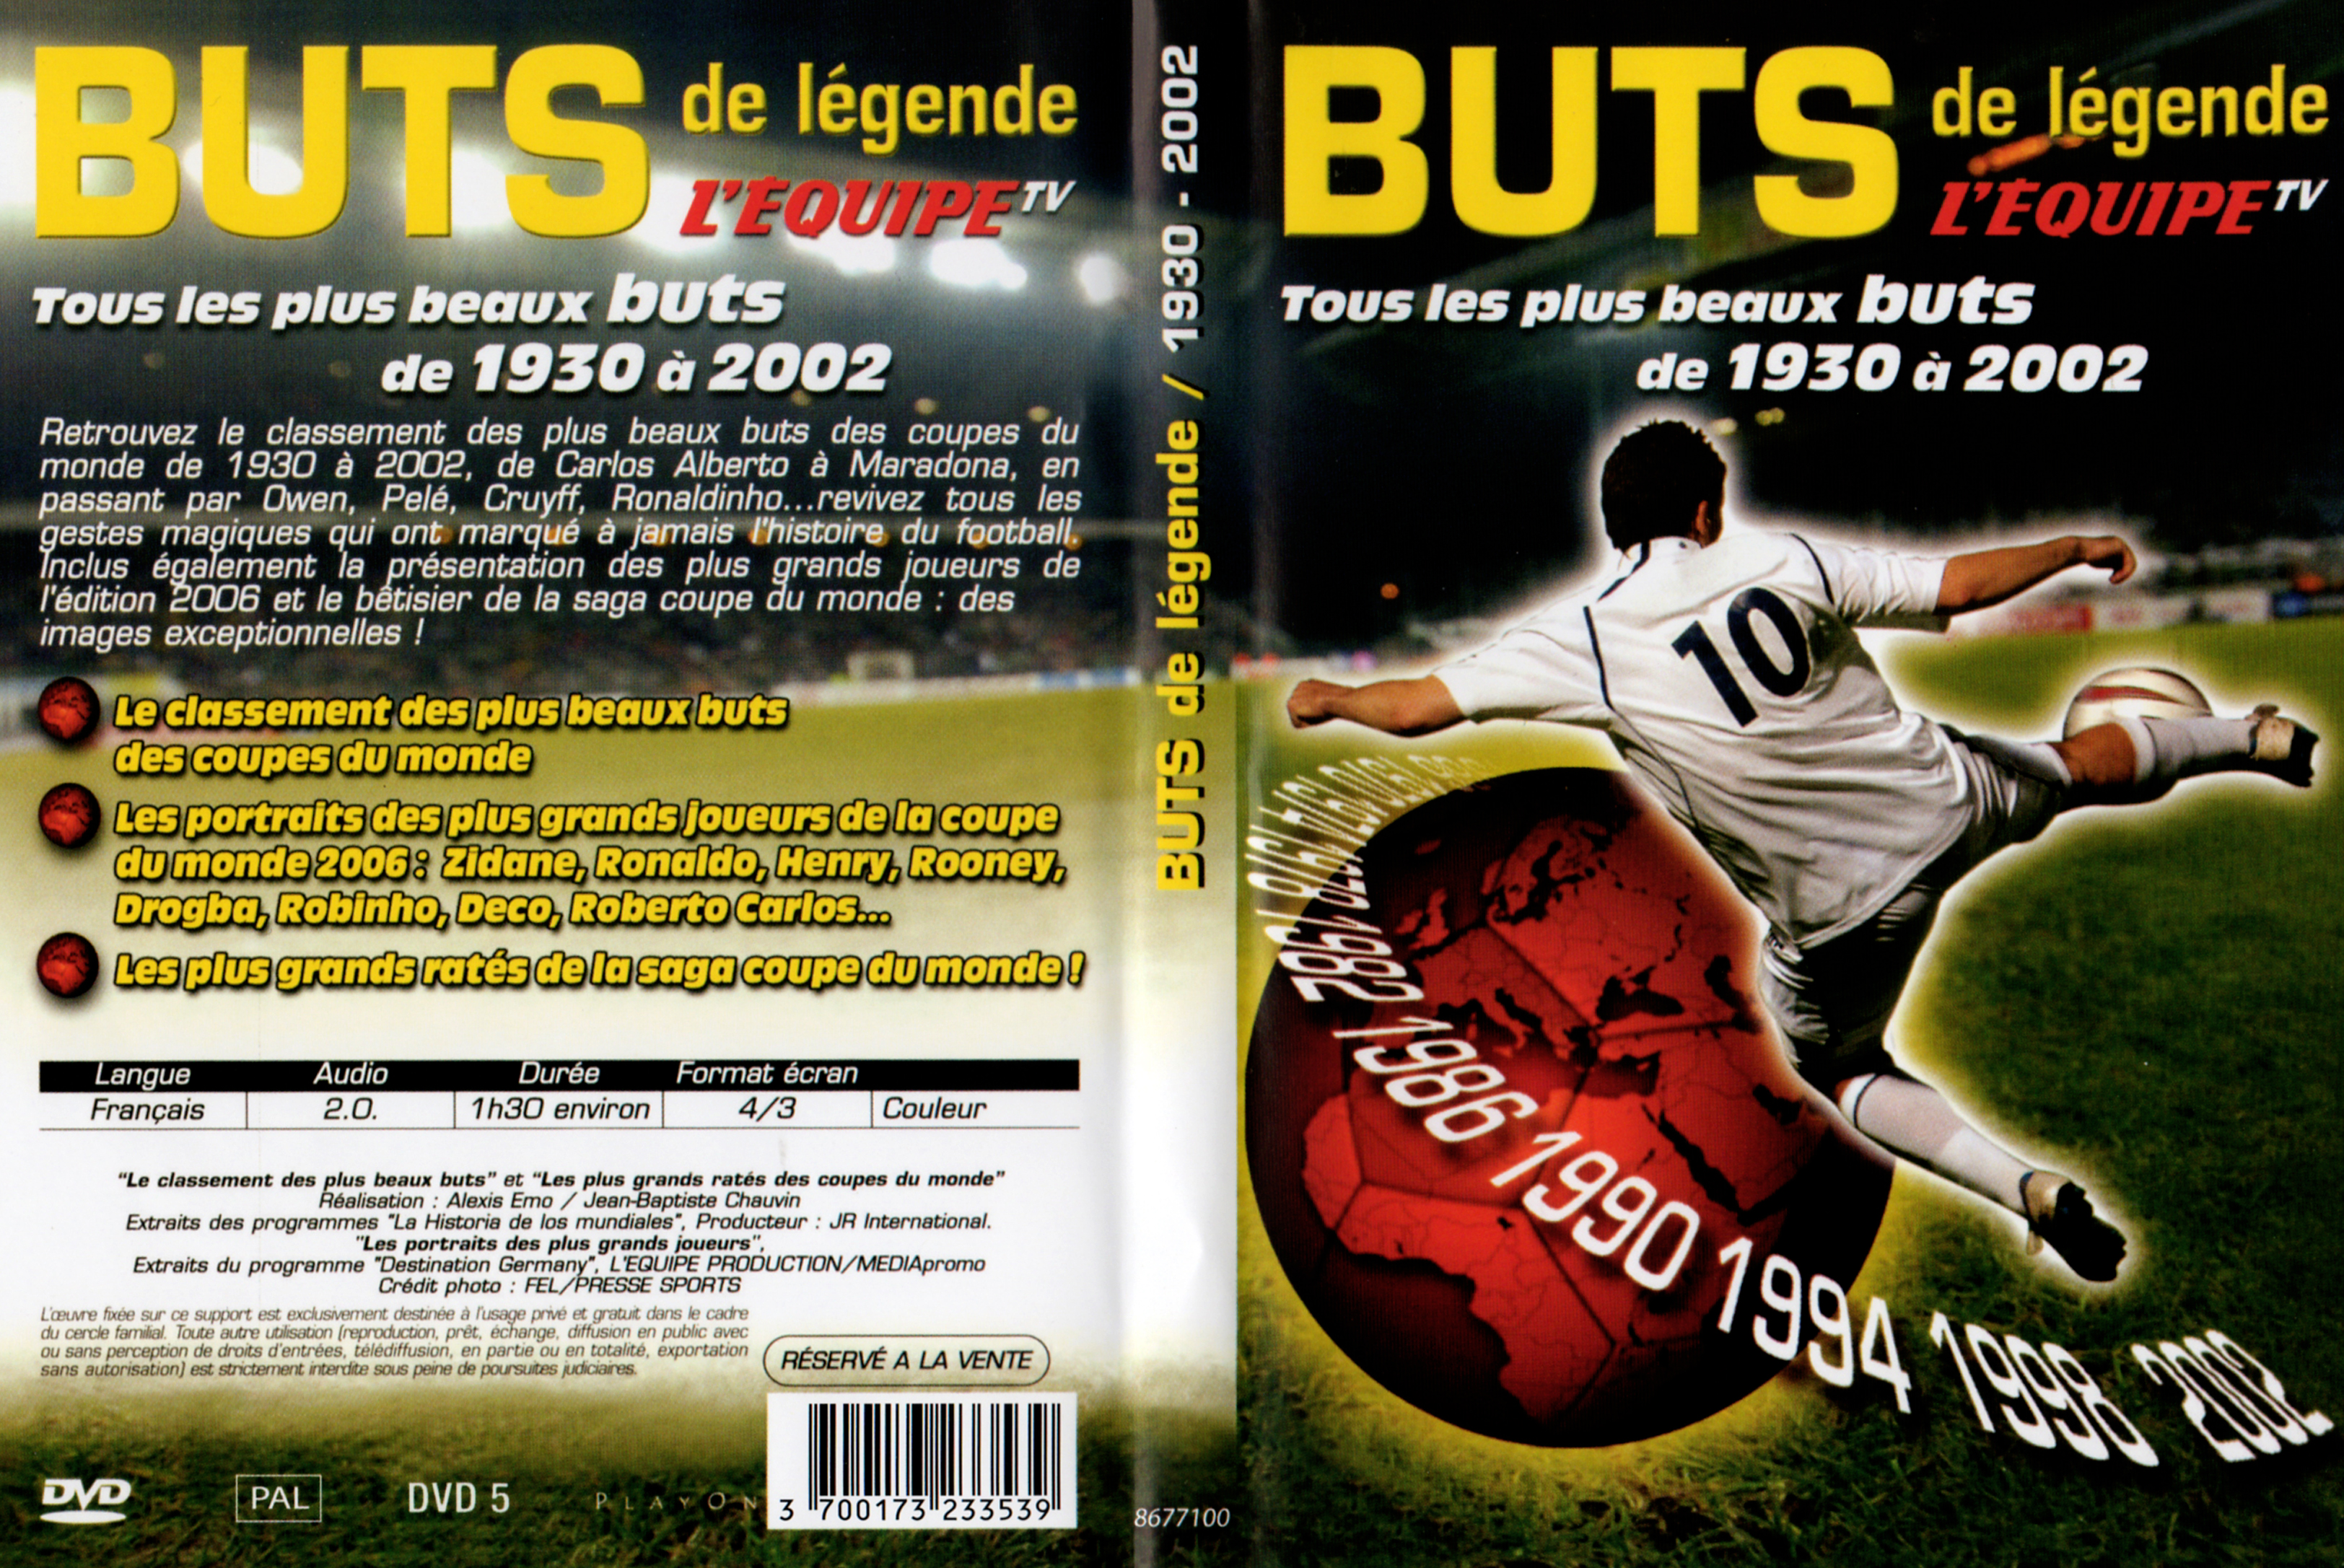 Jaquette DVD Buts de lgende 1930-2002